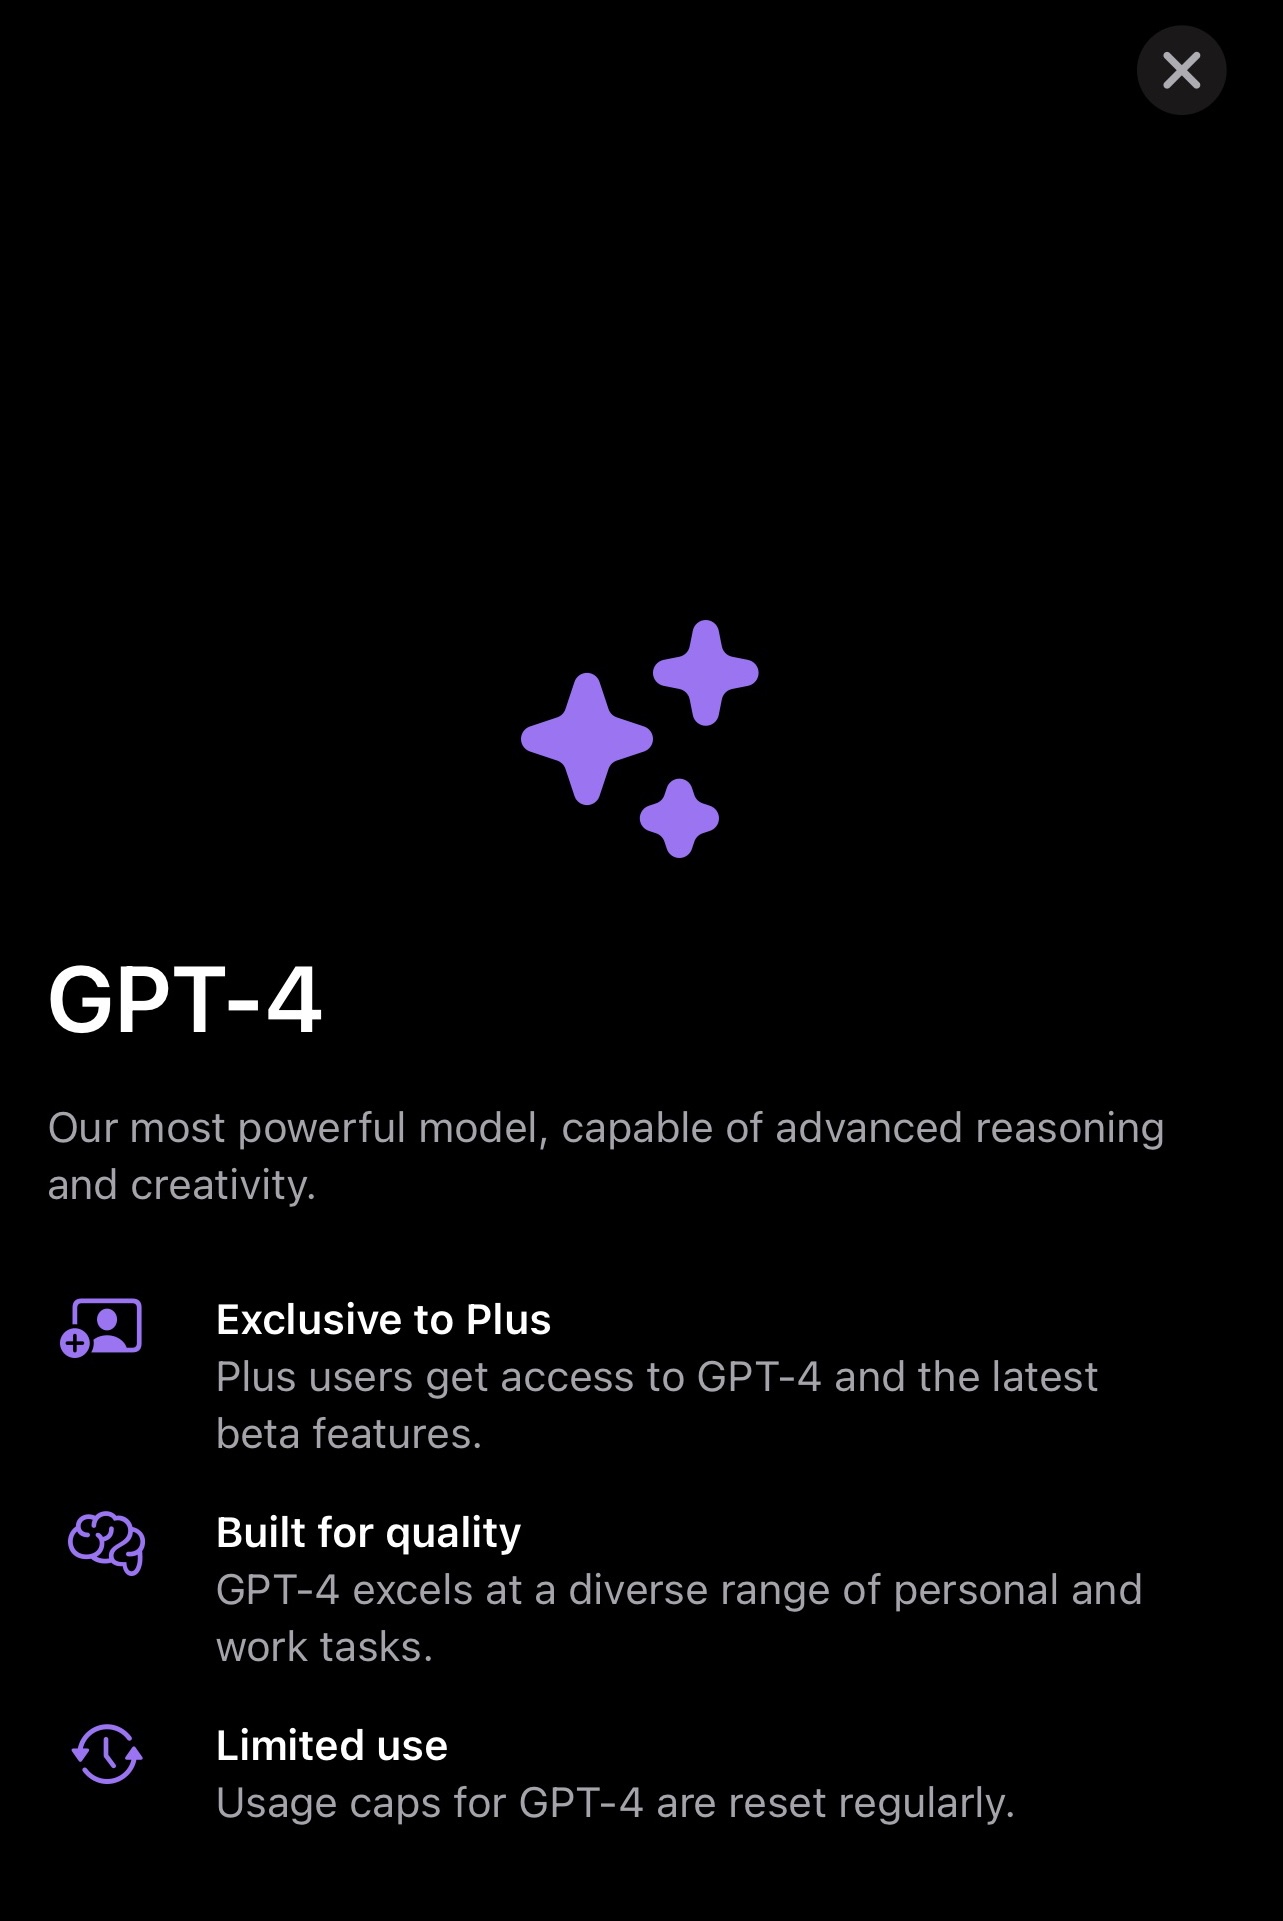 Una mirada al interior de la nueva aplicación ChatGPT para iPhone de OpenAI